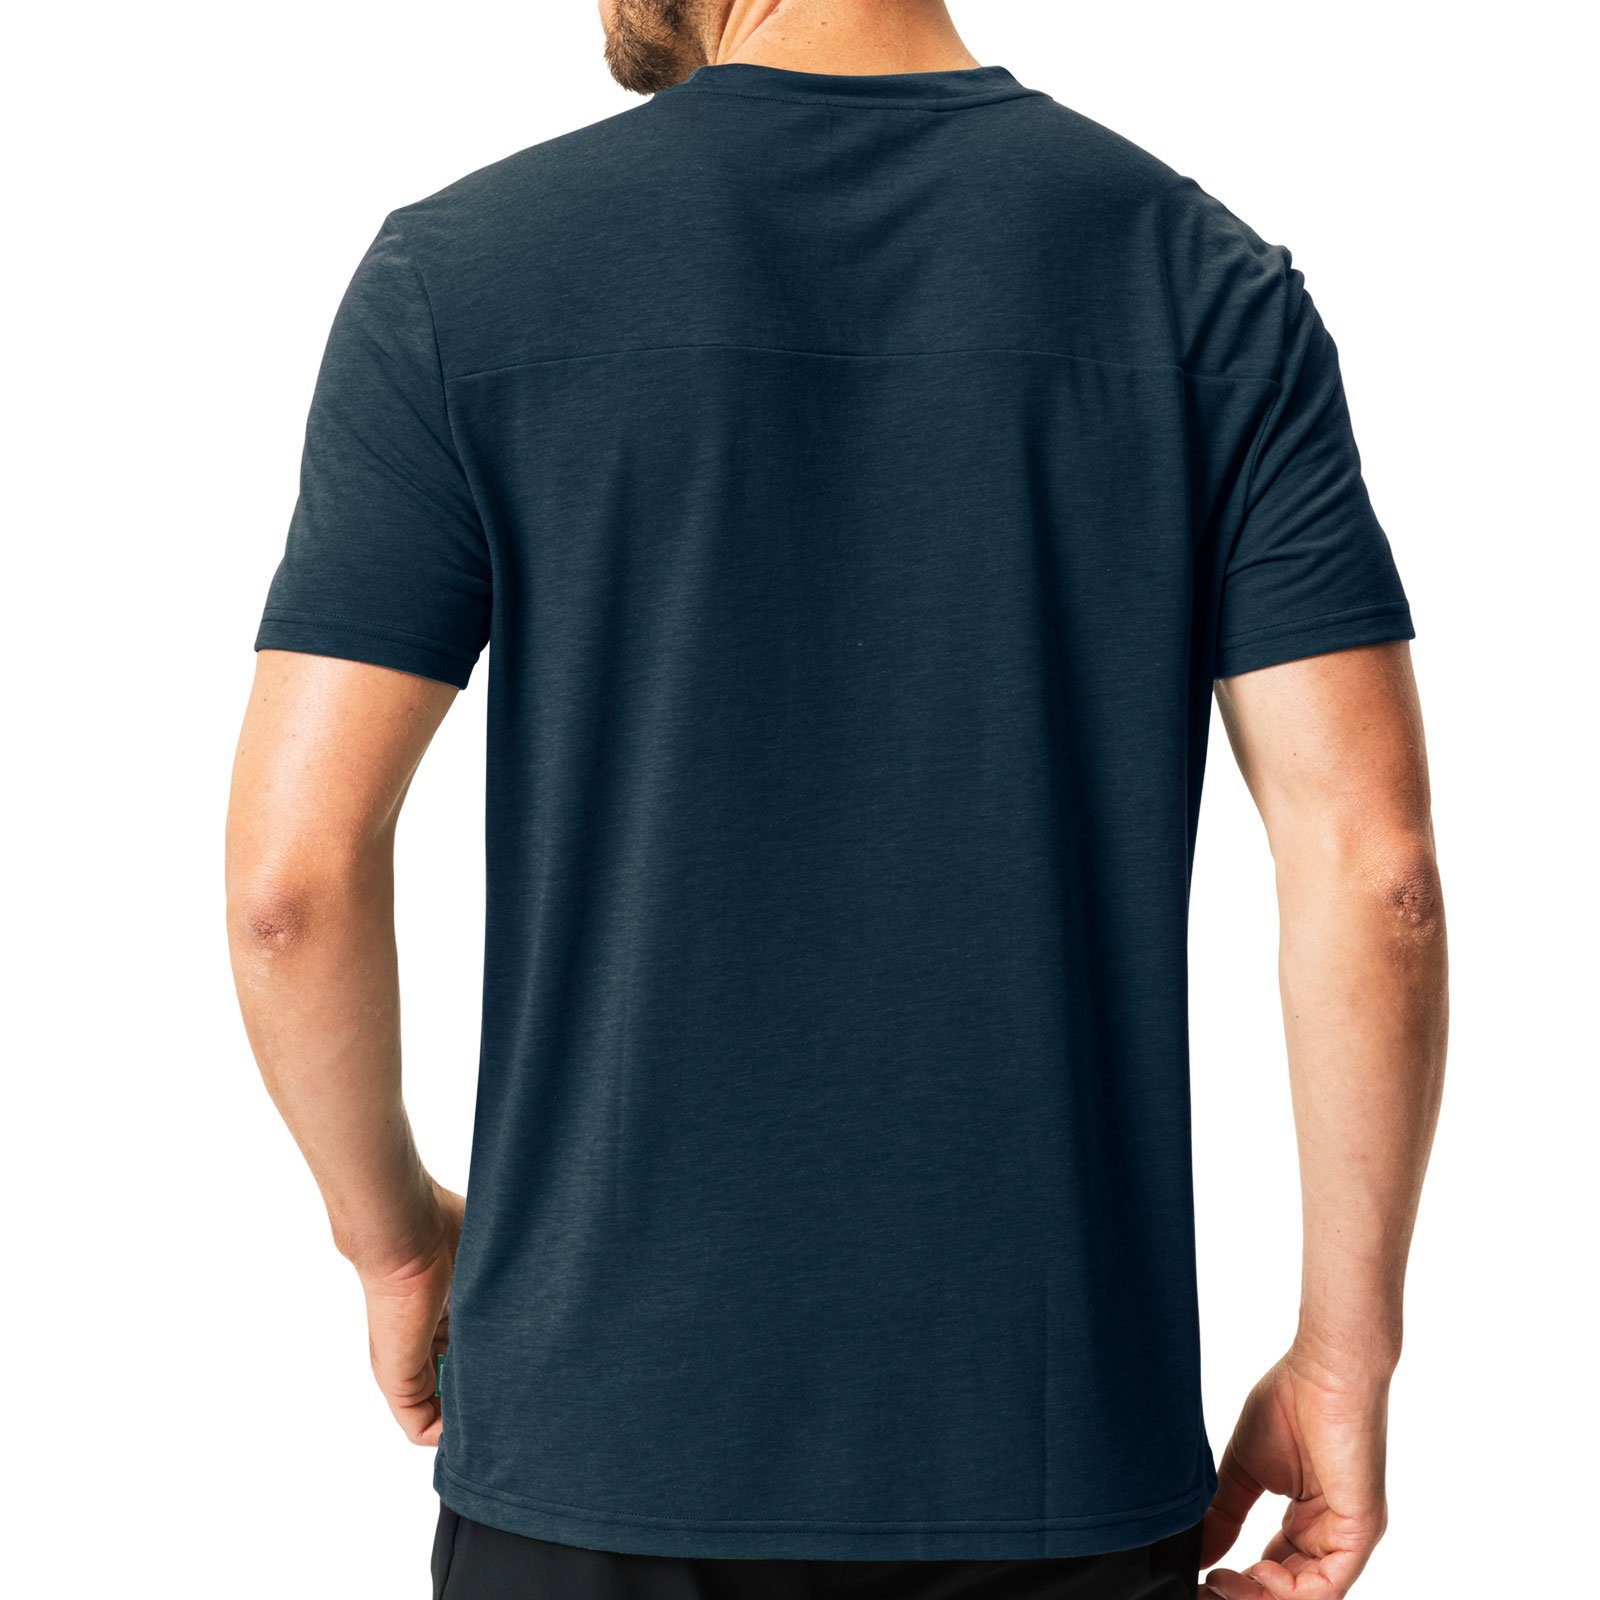 zu T-Shirt T-Shirt 42770-241 III dark 25% hergestellt sea aus blue Tekoa Holzfasern / VAUDE